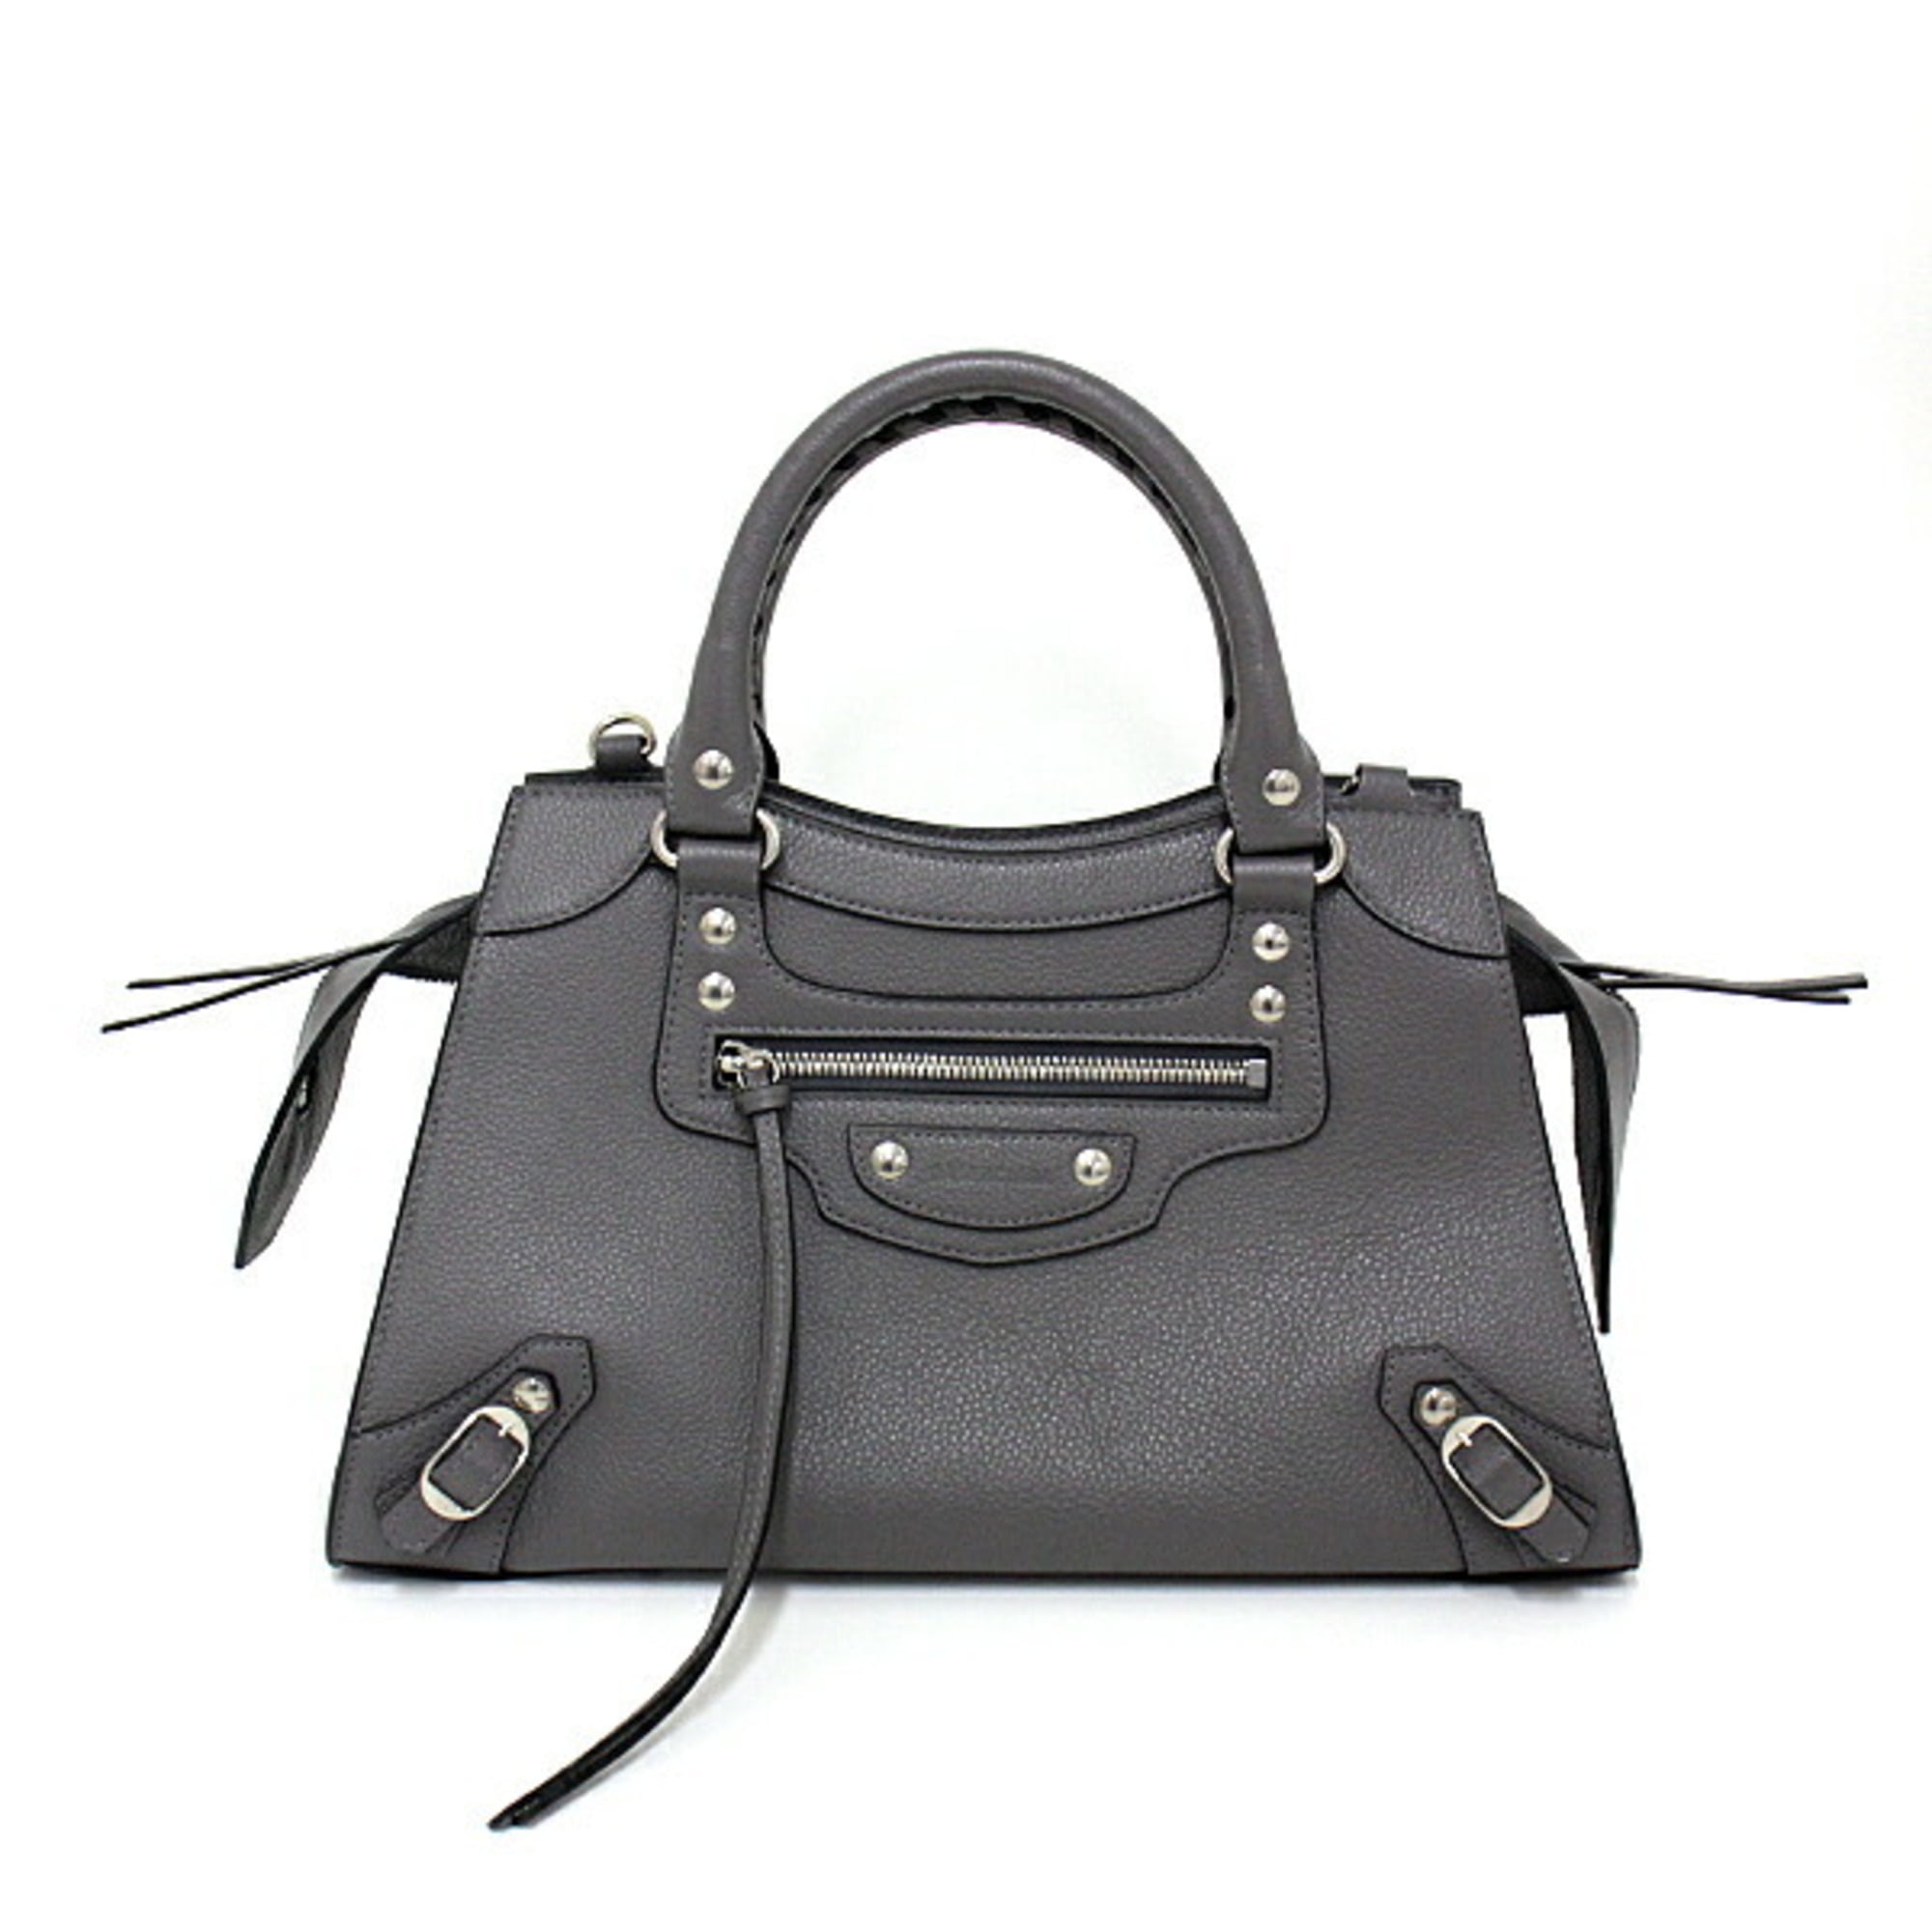 Pre-Owned Balenciaga BALENCIAGA Neo Classic Small Top Handle Bag 638521  Gray / Silver Handbag (Good)